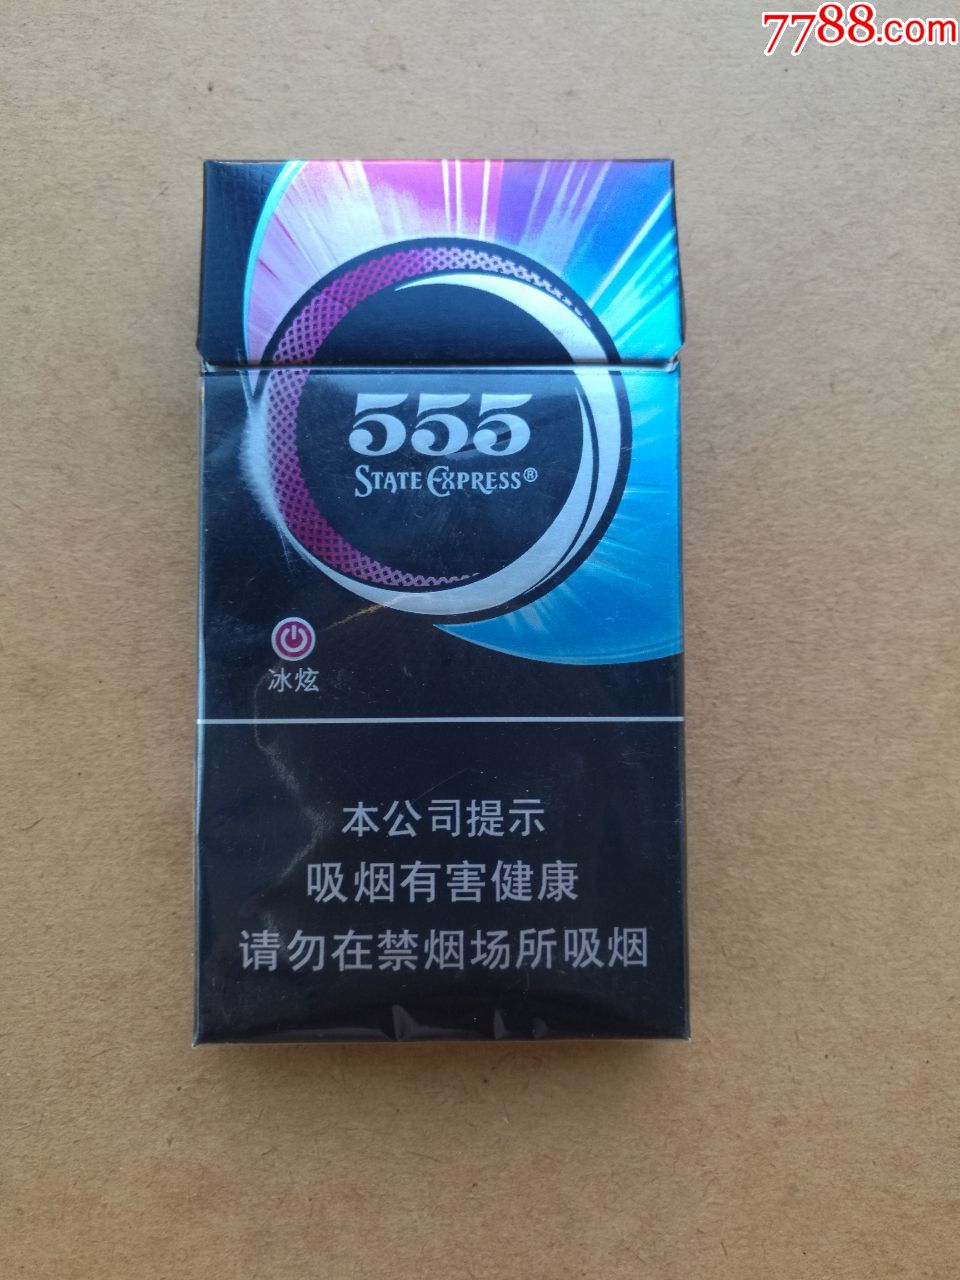 555香烟冰炫图片